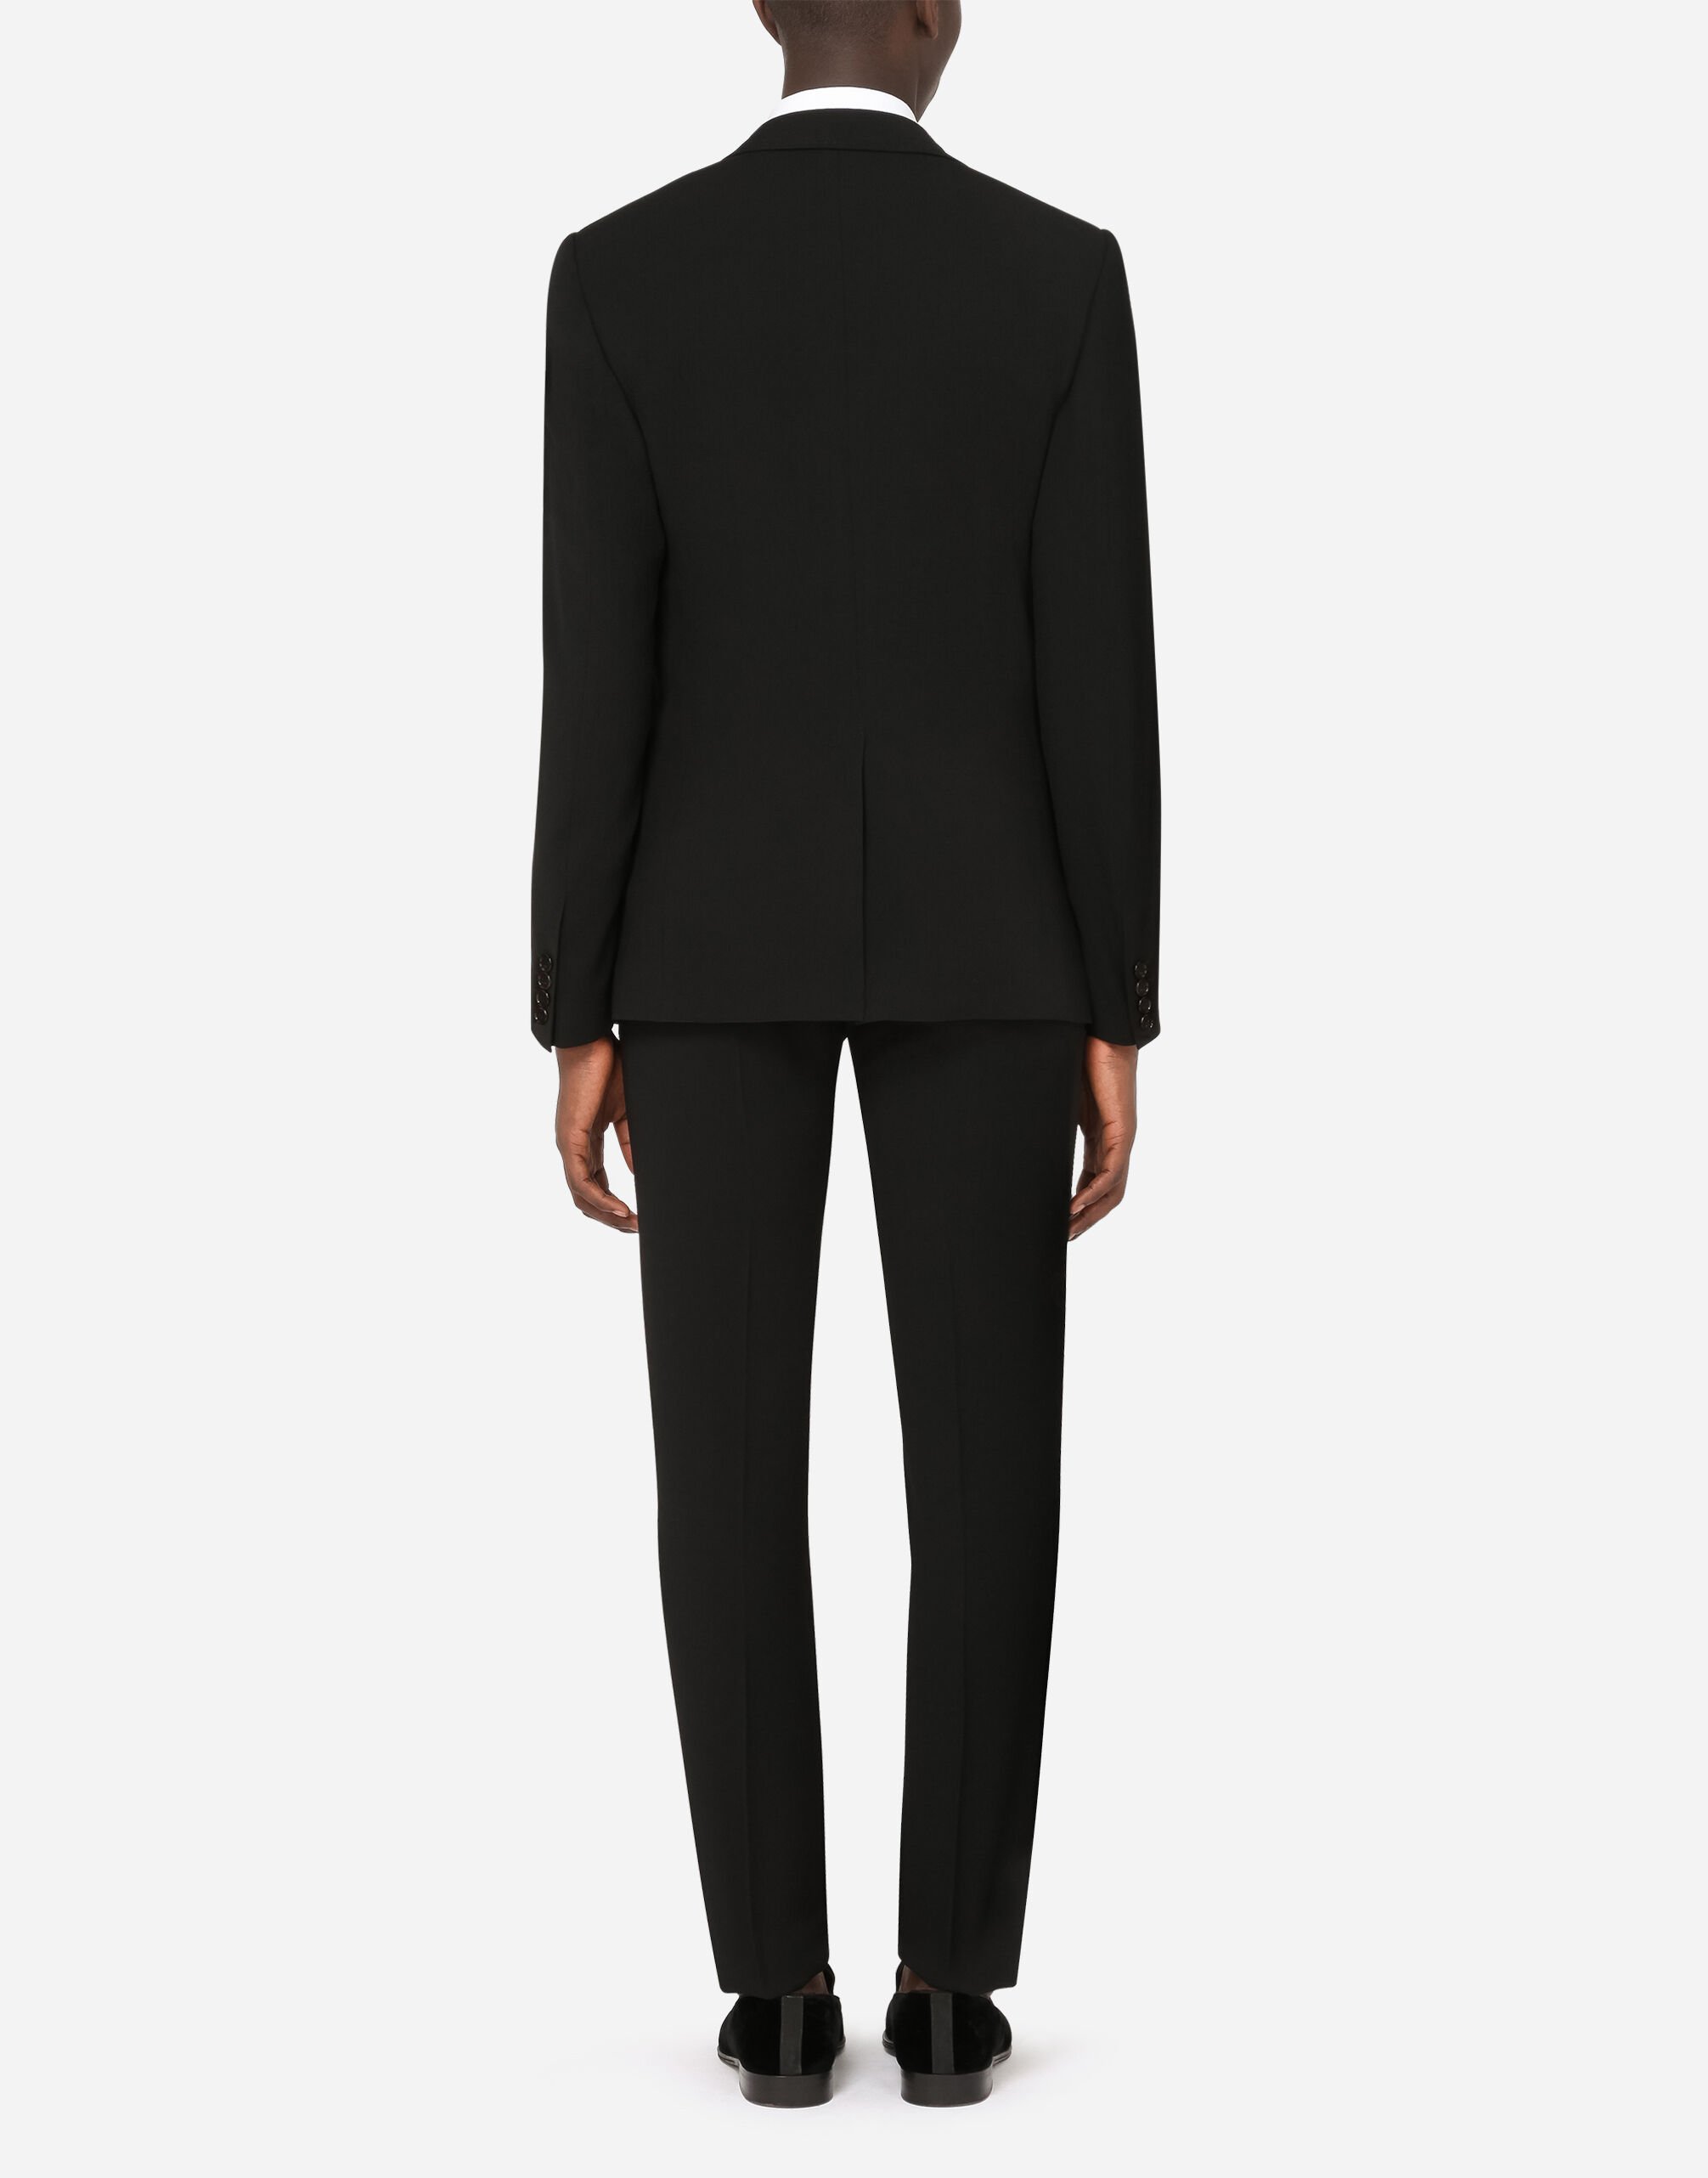 Saint Laurent Classic Suit in Black